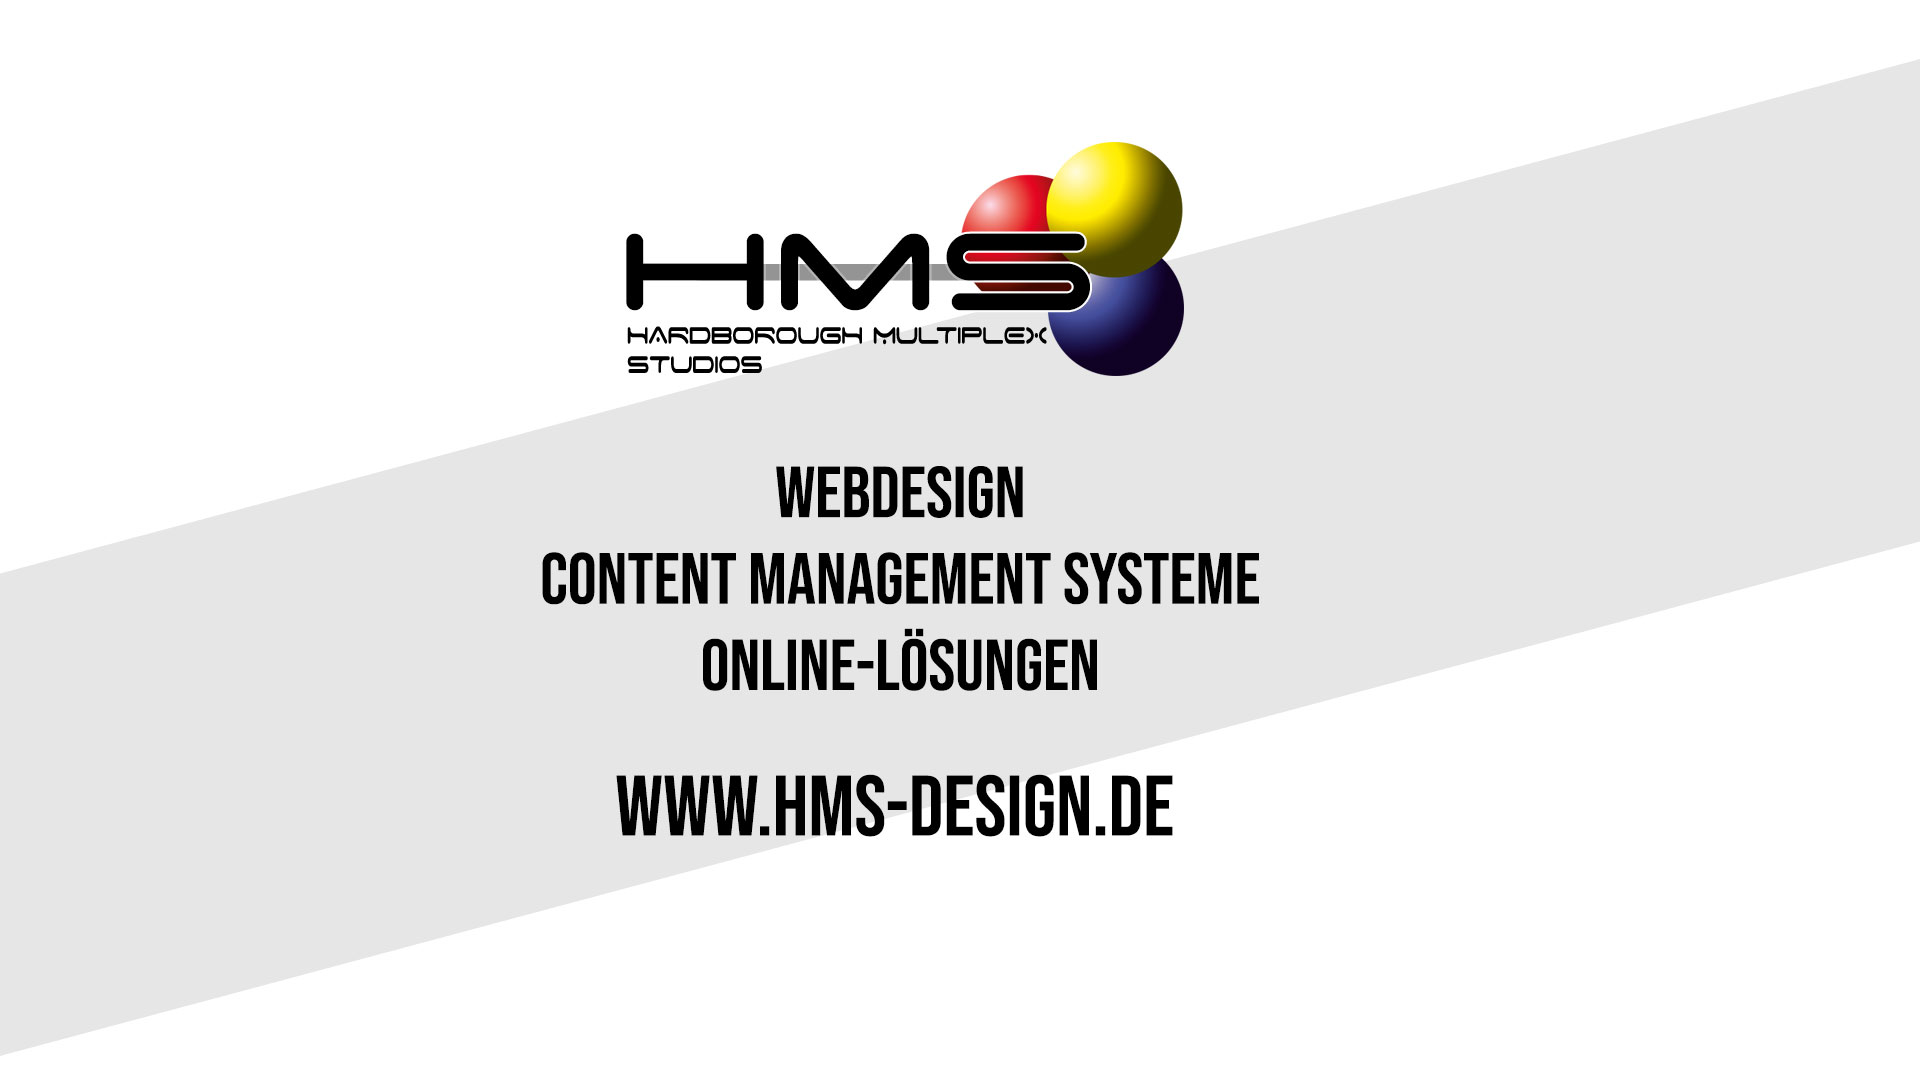 (c) Hms-design.de